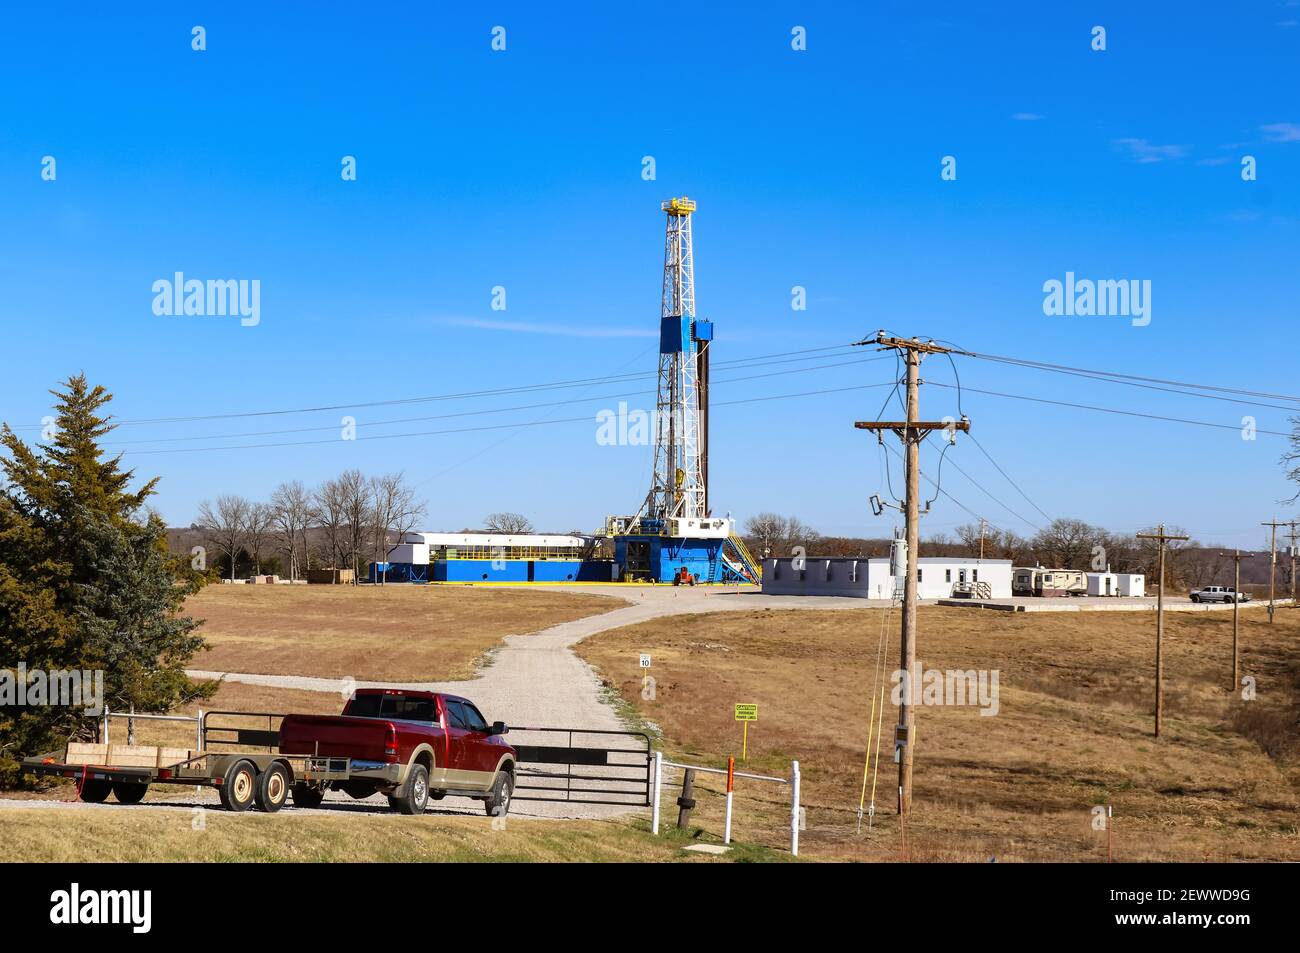 Site de forage et pour de grands puits de gaz-huile avec des bâtiments et équipements - camion rouge avec remorque à porte fermée ne menant à elle Banque D'Images